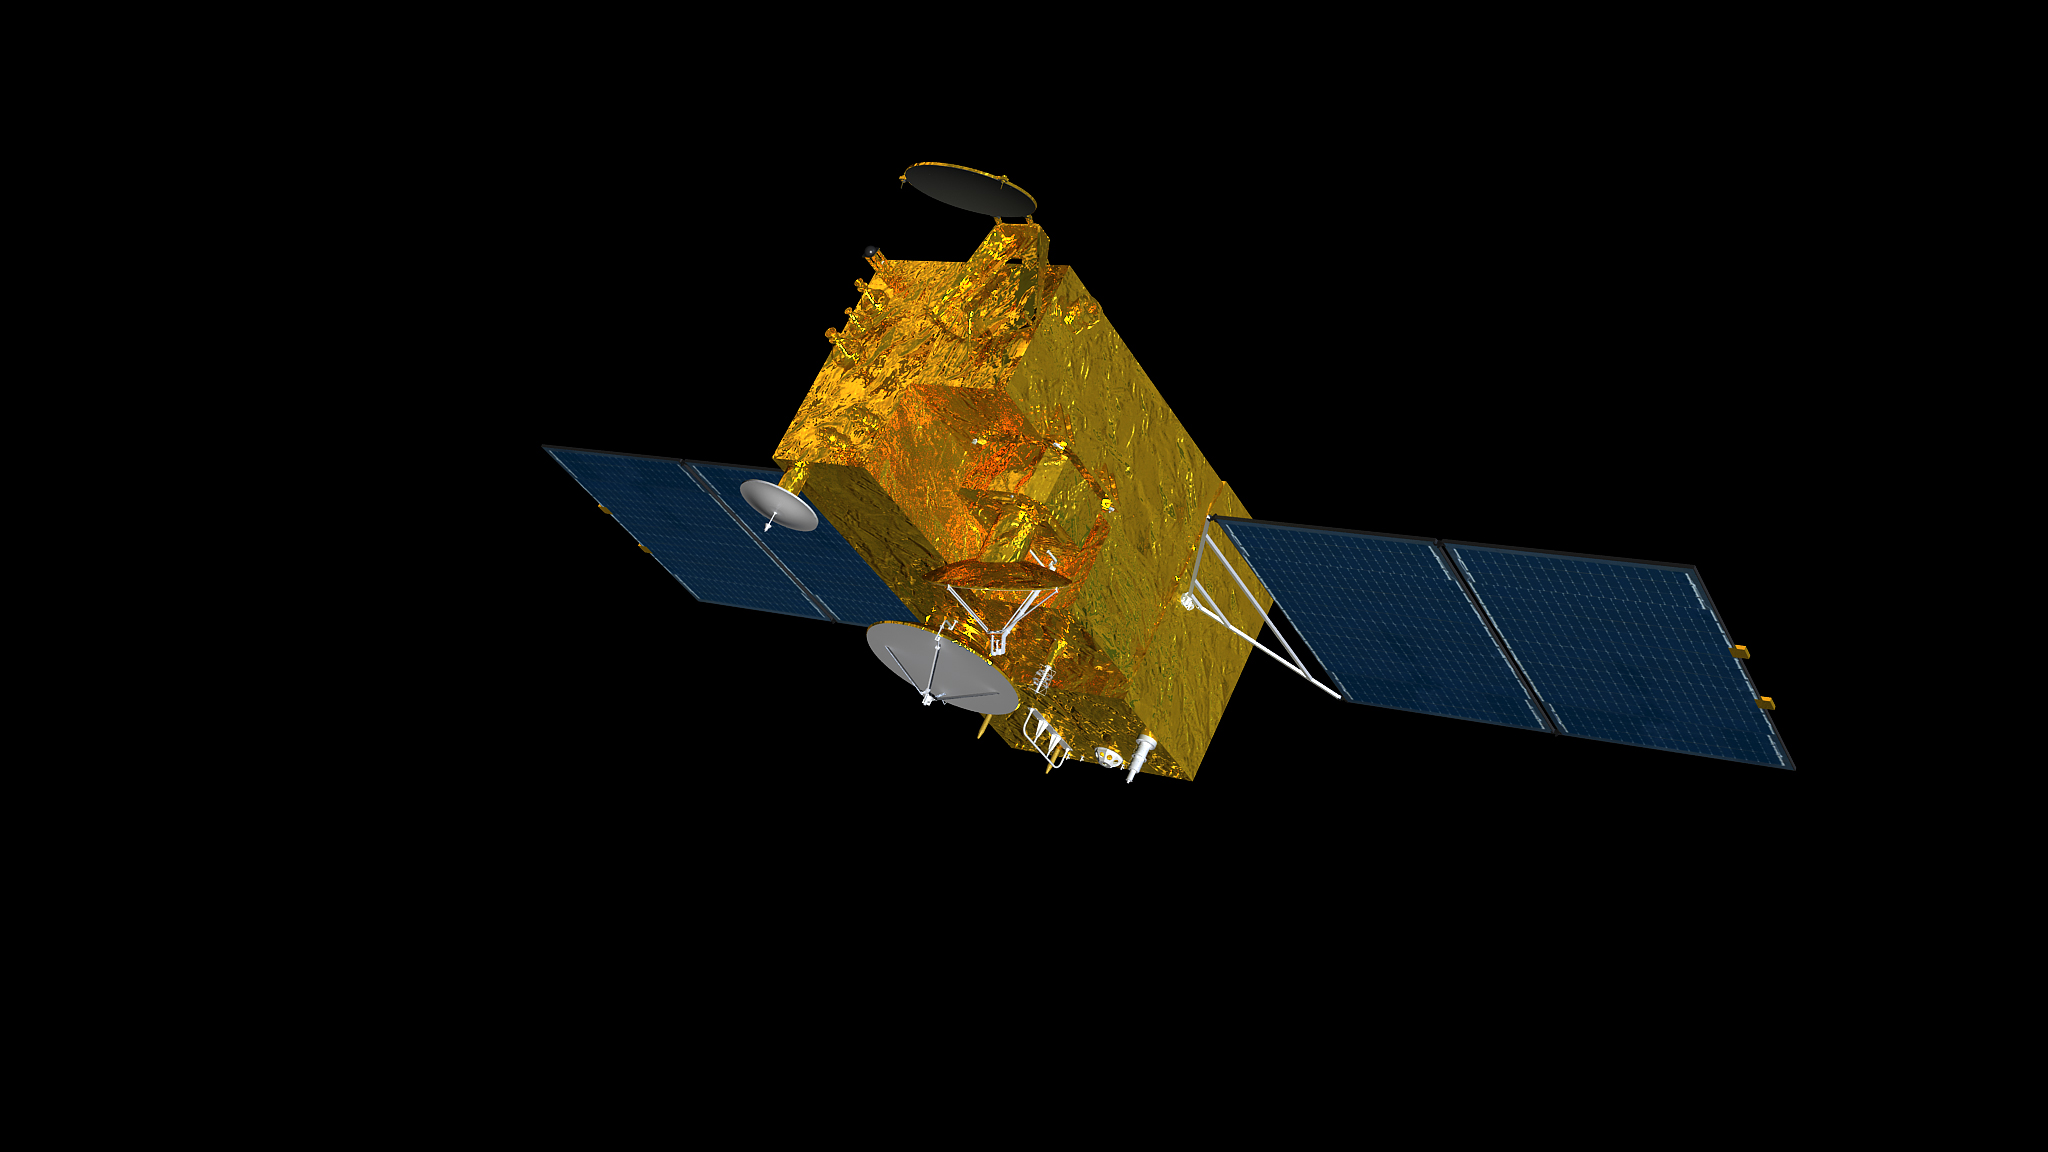 DORIS satellite: HY-2C